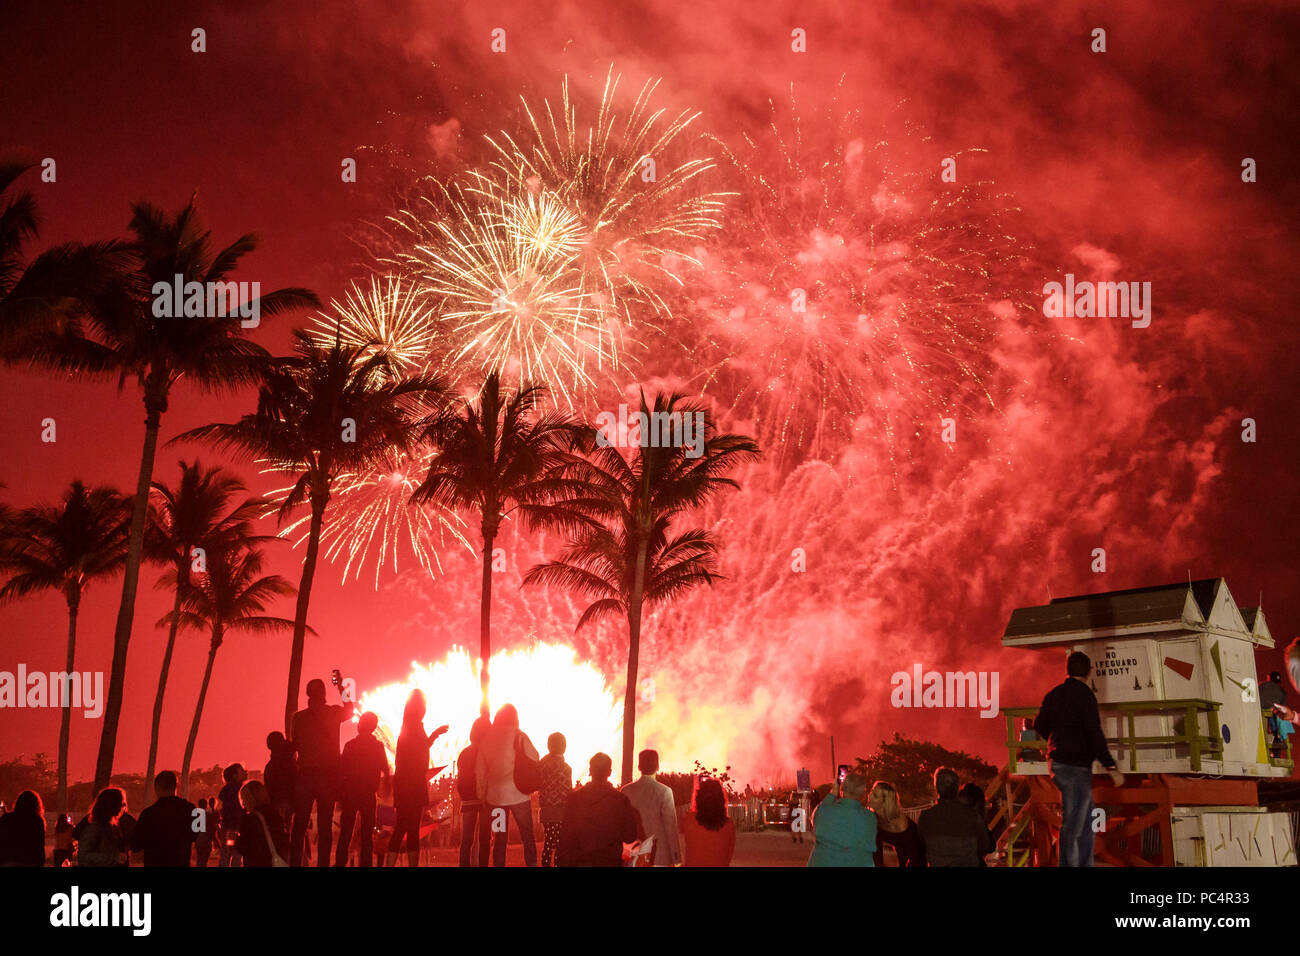 Miami Beach Florida, Silvester, Feier Feuerwerk, beobachten, Besucher reisen Reise Reise Tourismus Wahrzeichen Kultur Kultur Kultur, V Stockfoto